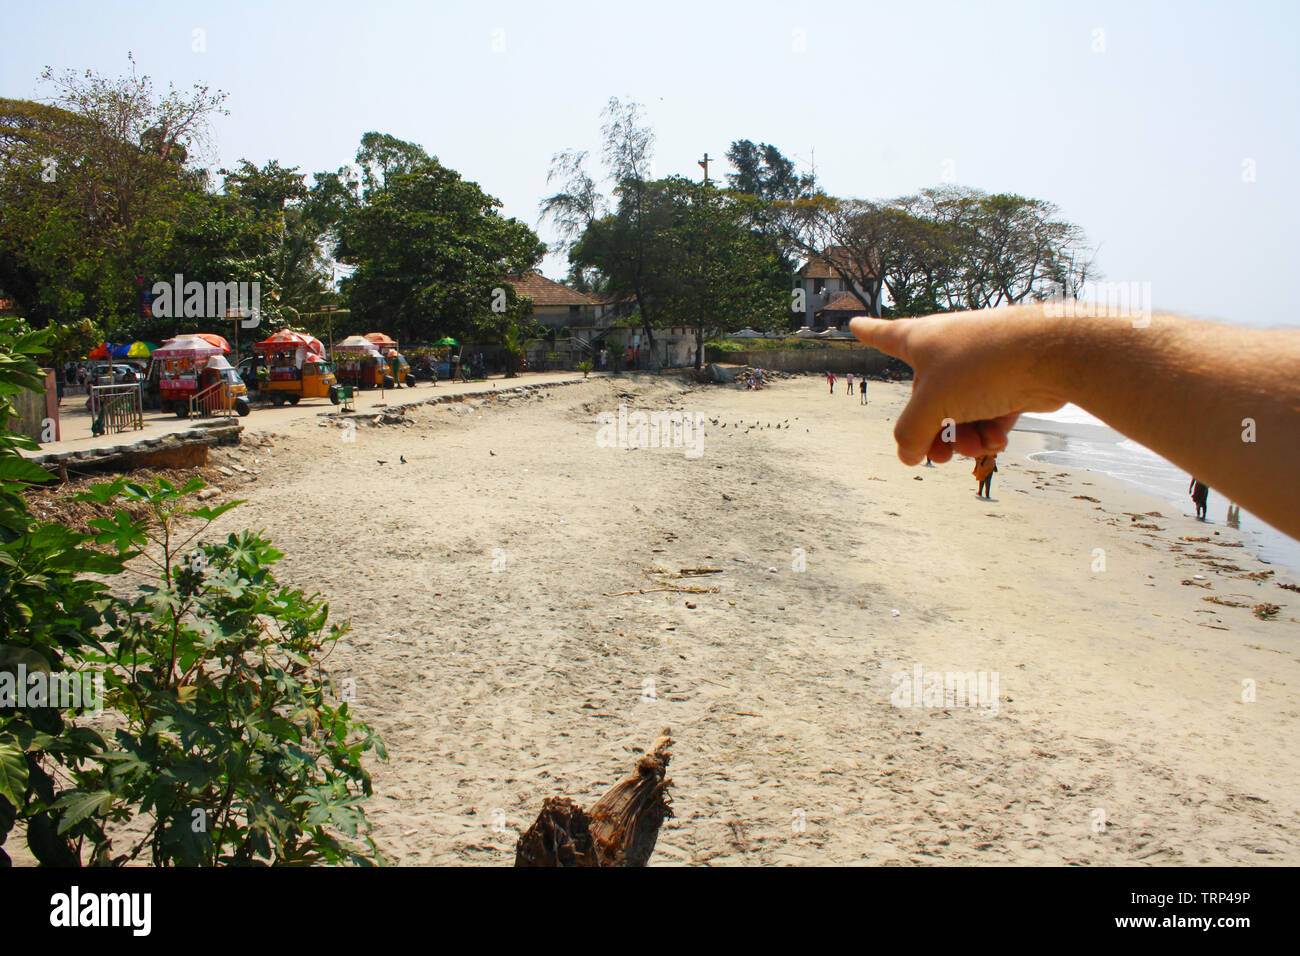 Bunte tuk tuk Eis Lkw am Strand von der touristischen Vergangenheit von Cochin (Kochi) Indien geparkt für ein kaltes erfrischende behandeln in der Hitze Stockfoto